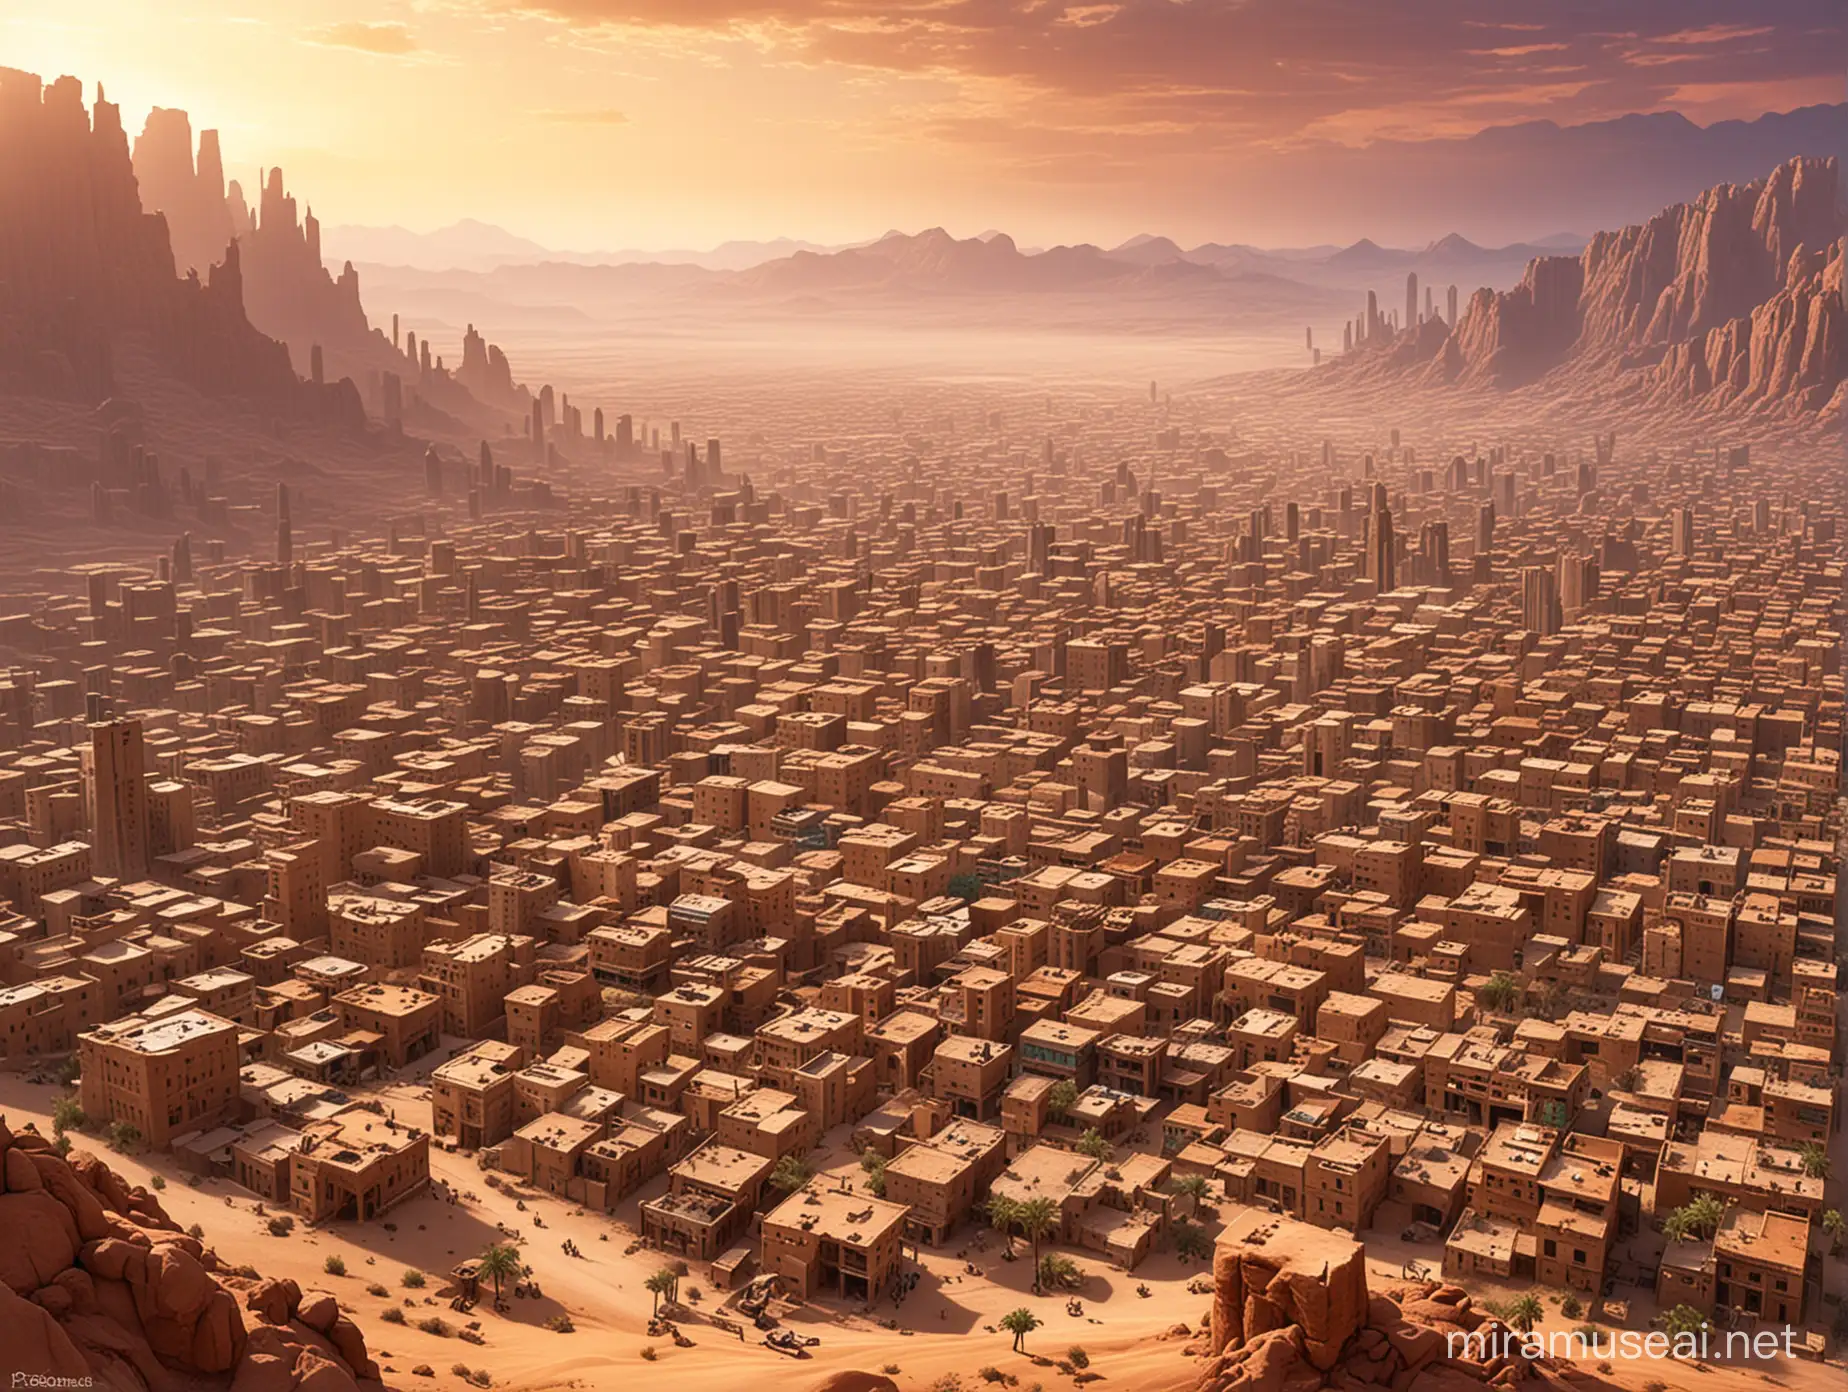 Vibrant Desert Cityscape Ancient Architecture Amidst Sand Dunes